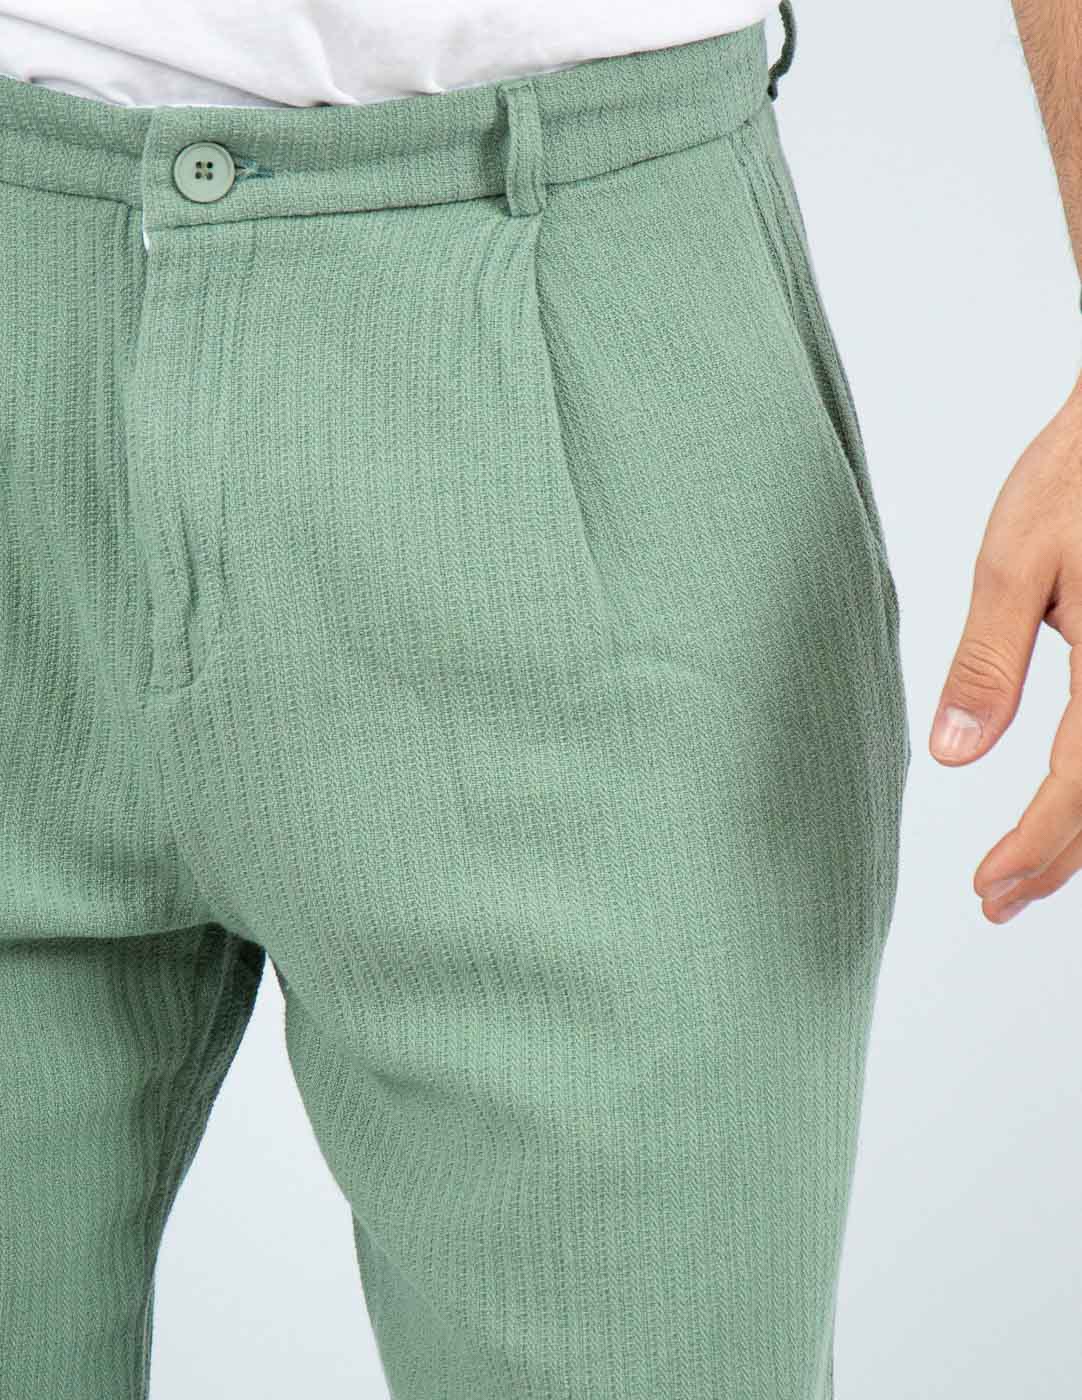 pantalone uomo fondo largo in cotone